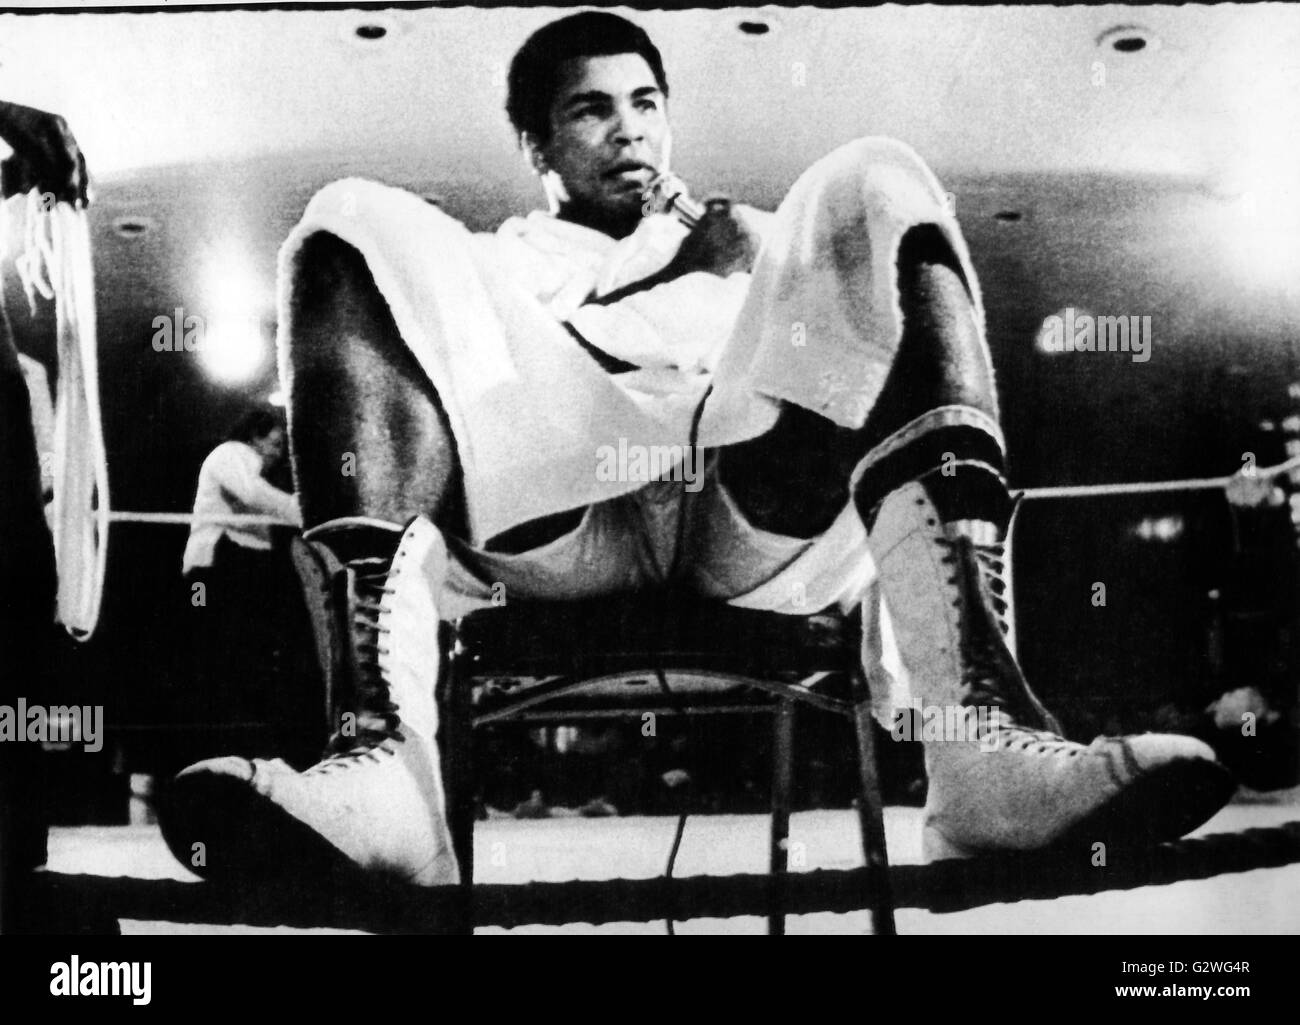 FILE - un file immagine datata 18 febbraio 1976, ci mostra heavyweight boxer Muhammad Ali parlando durante una conferenza stampa a l'anello in corrispondenza di un campo di addestramento in Puerto Rico. Nato Cassio argilla, boxe leggenda Muhammad Ali, soprannominato 'il più grande, ' morì il 03 giugno 2016 a Phoenix, Arizona, Stati Uniti d'America, all'età di 74, una famiglia portavoce ha detto. Foto: dpa Foto Stock